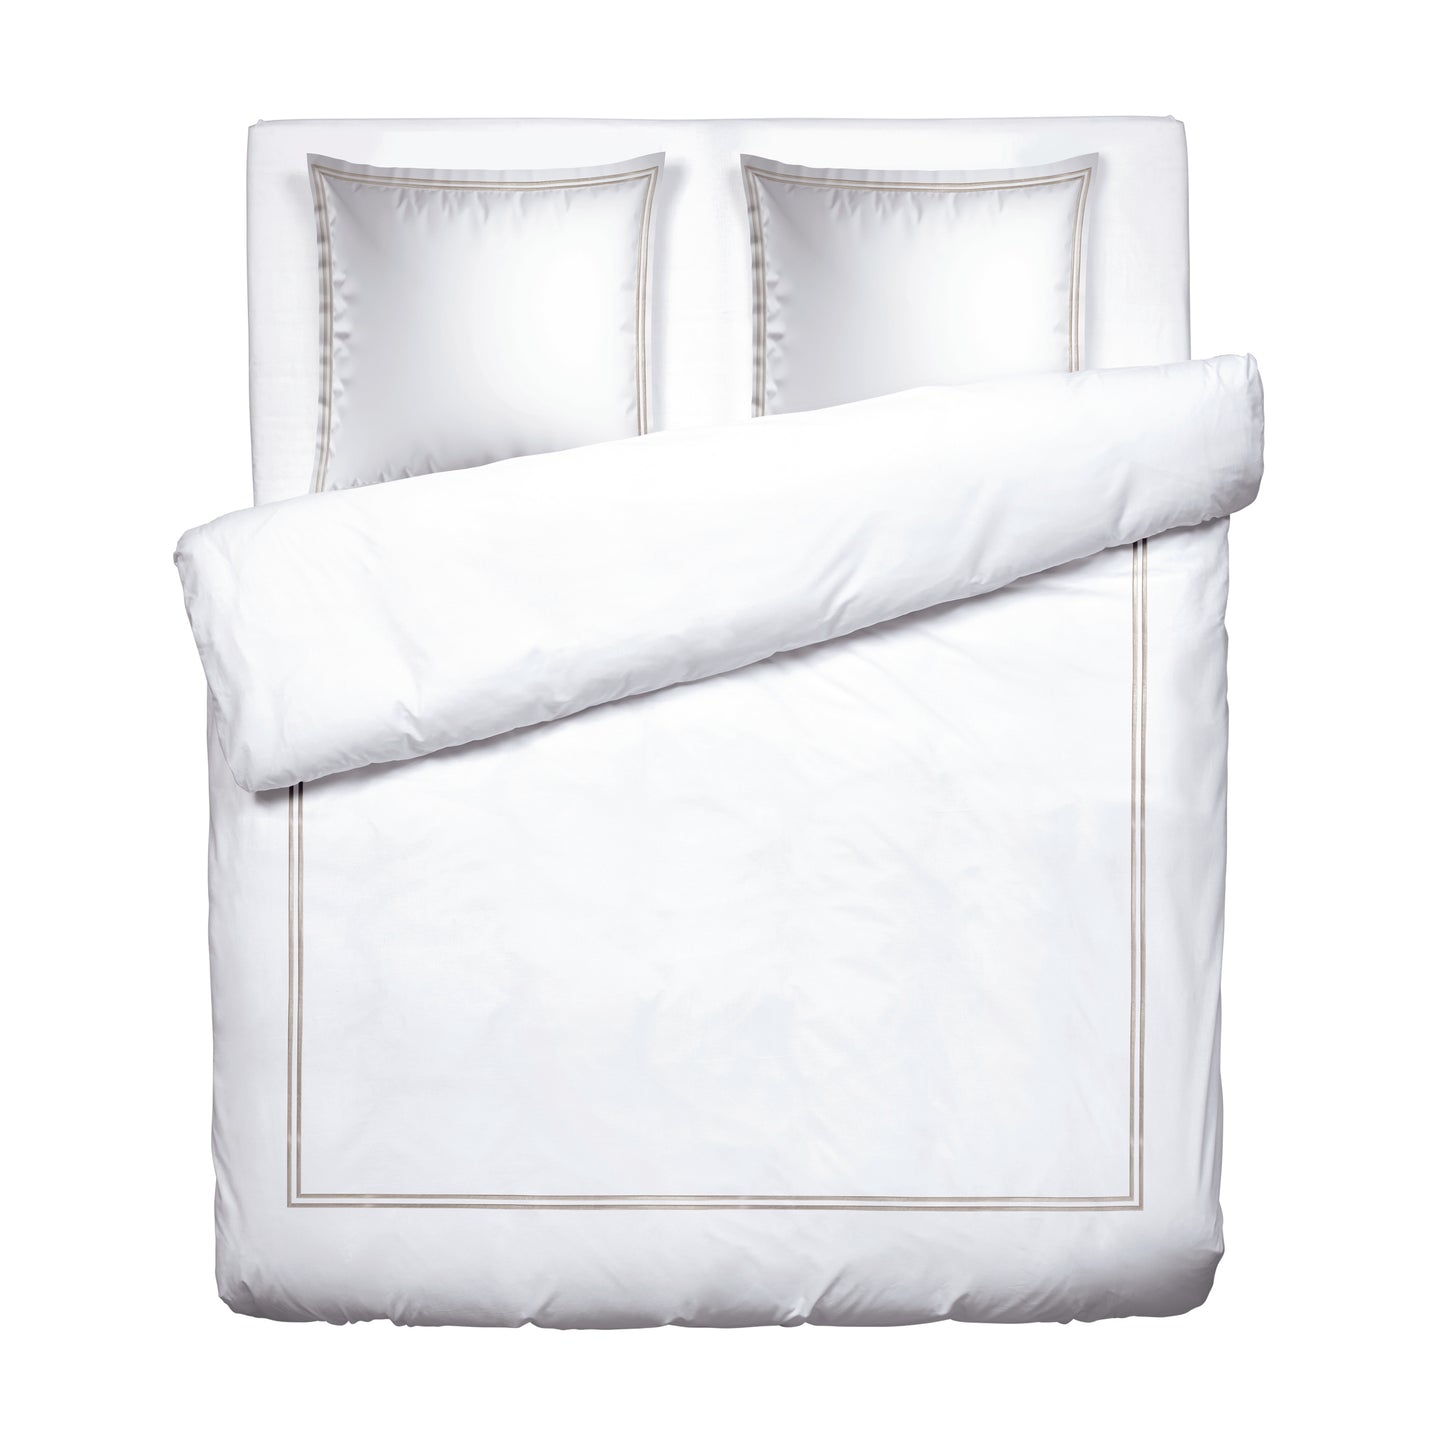 Duvet cover + pillowcase(s) cotton satin - Saint-Tropez White / Taupe